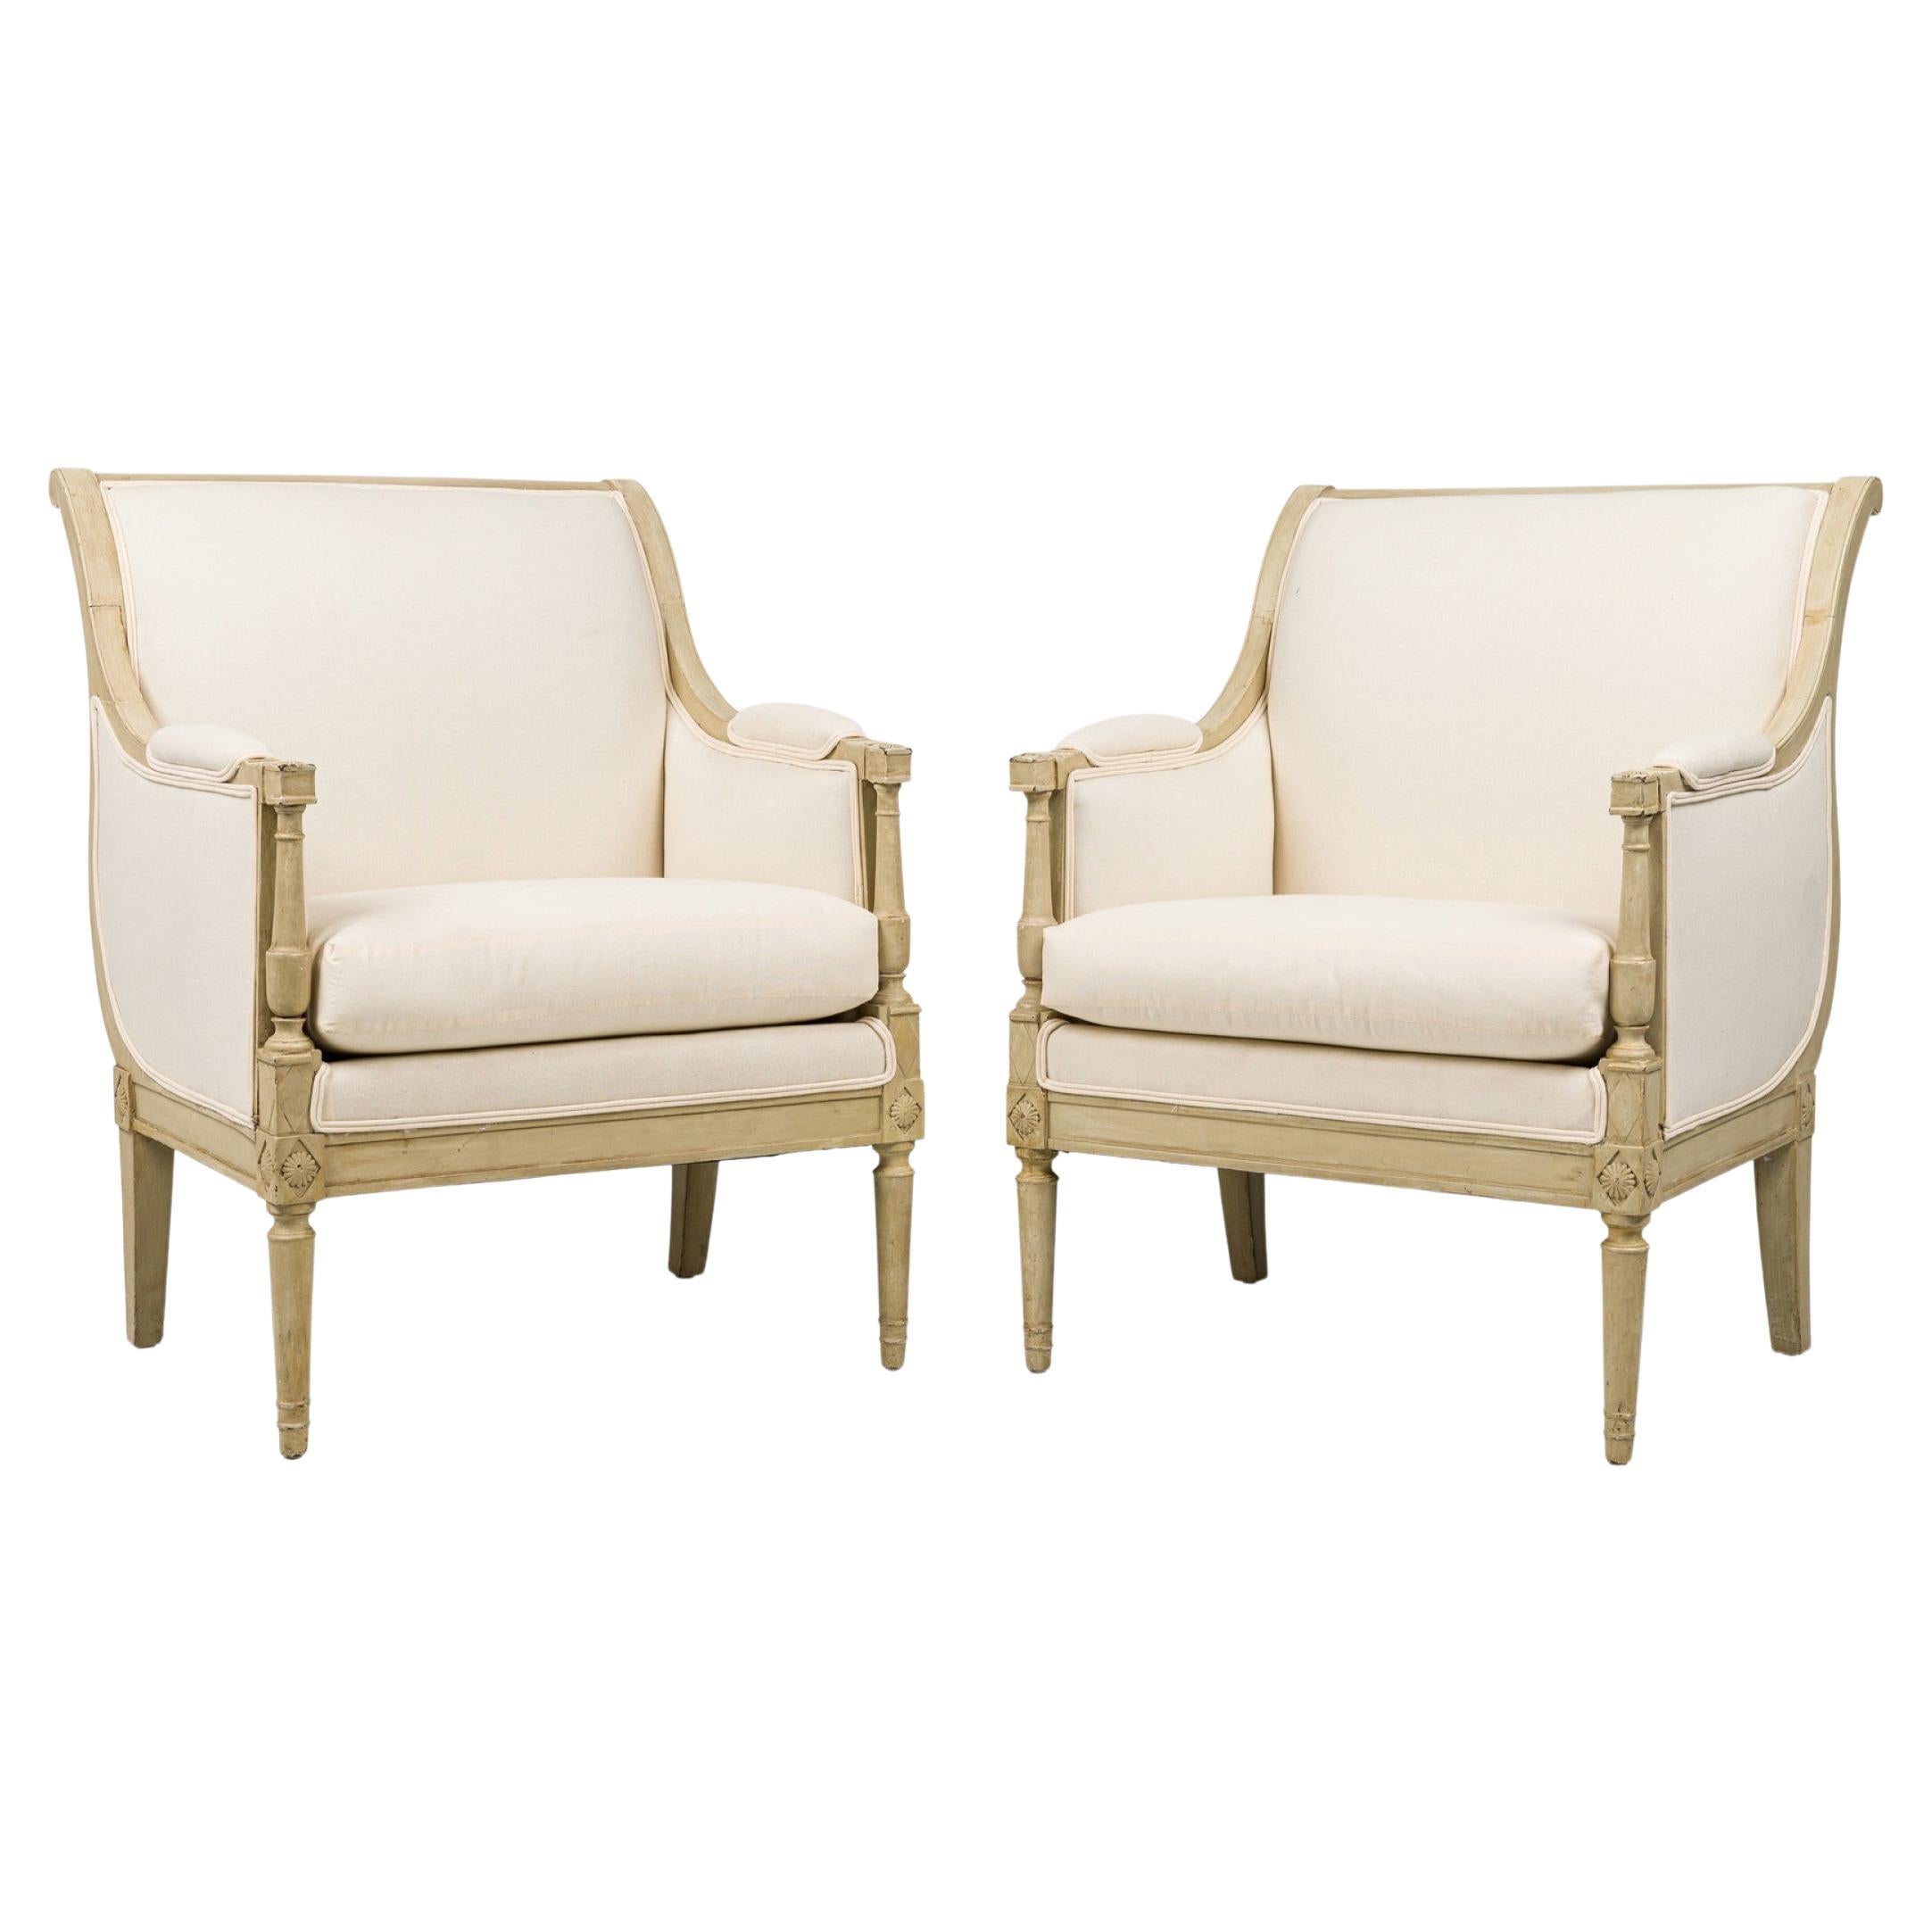 Ein Paar Gustavianische schwedische, beige gepolsterte Bergere-Sessel